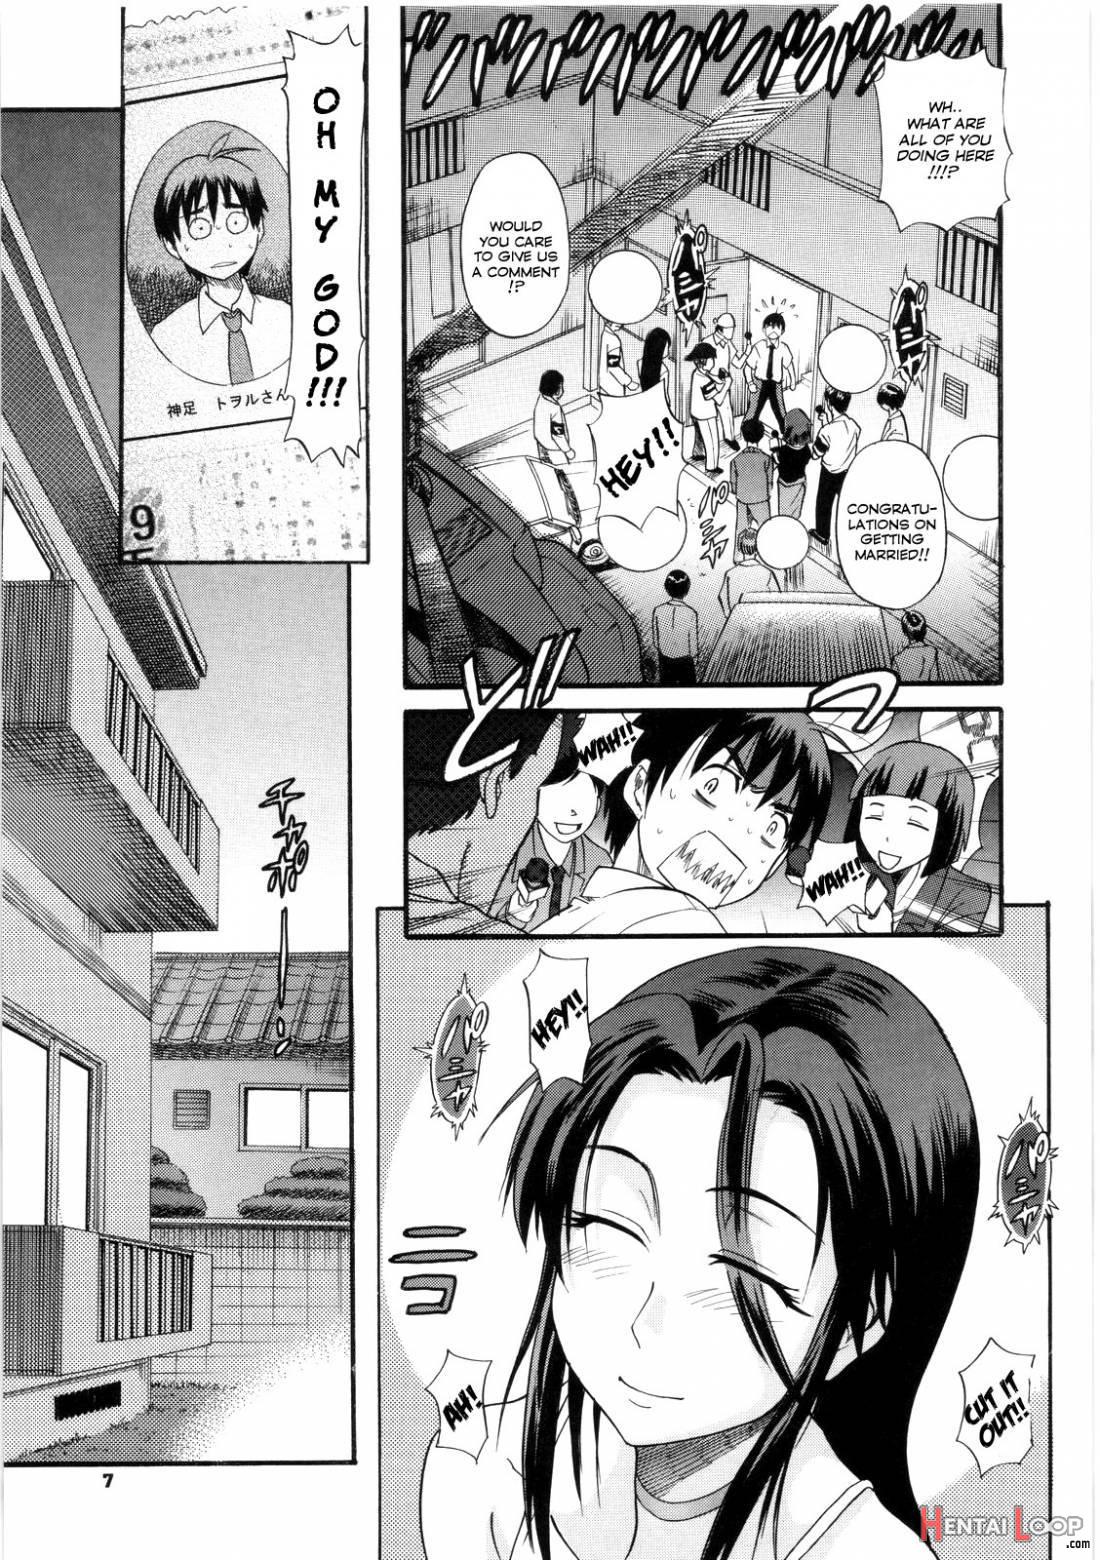 B-Chiku page 7